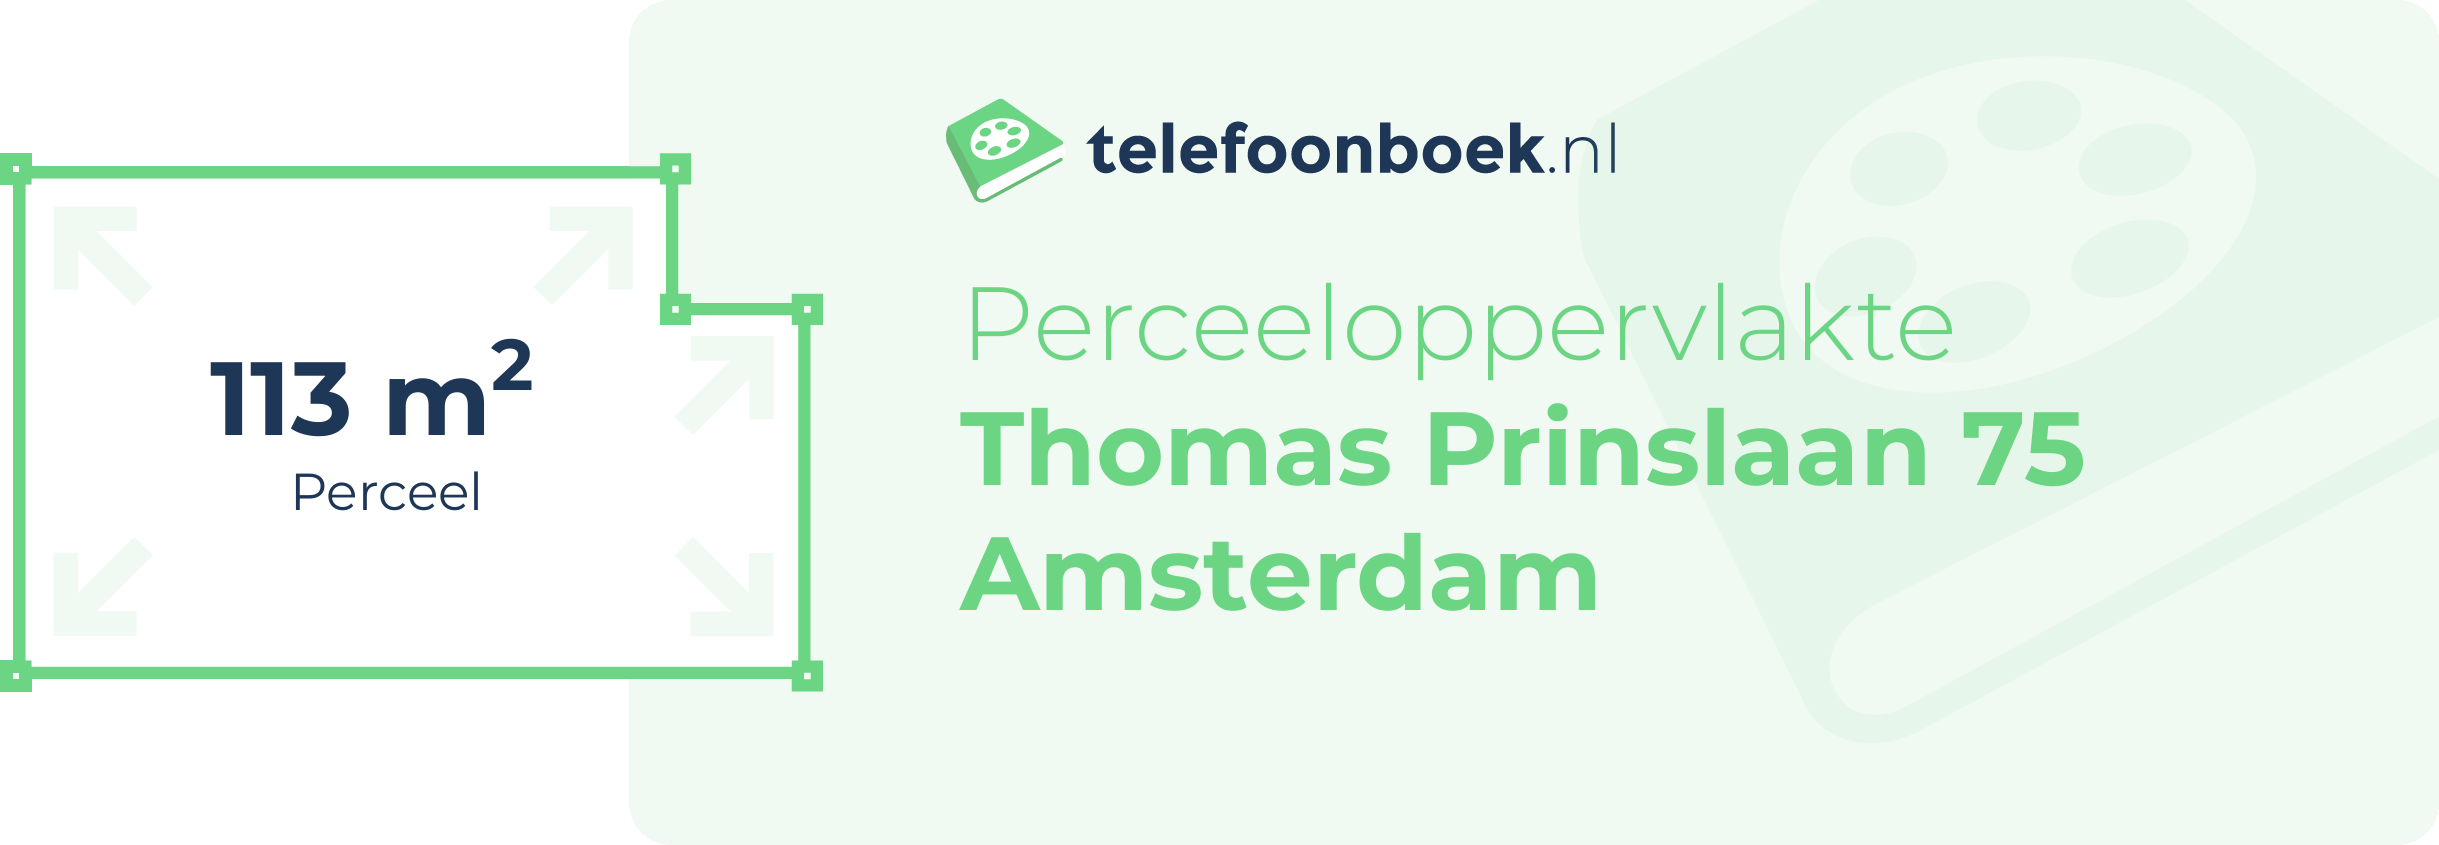 Perceeloppervlakte Thomas Prinslaan 75 Amsterdam